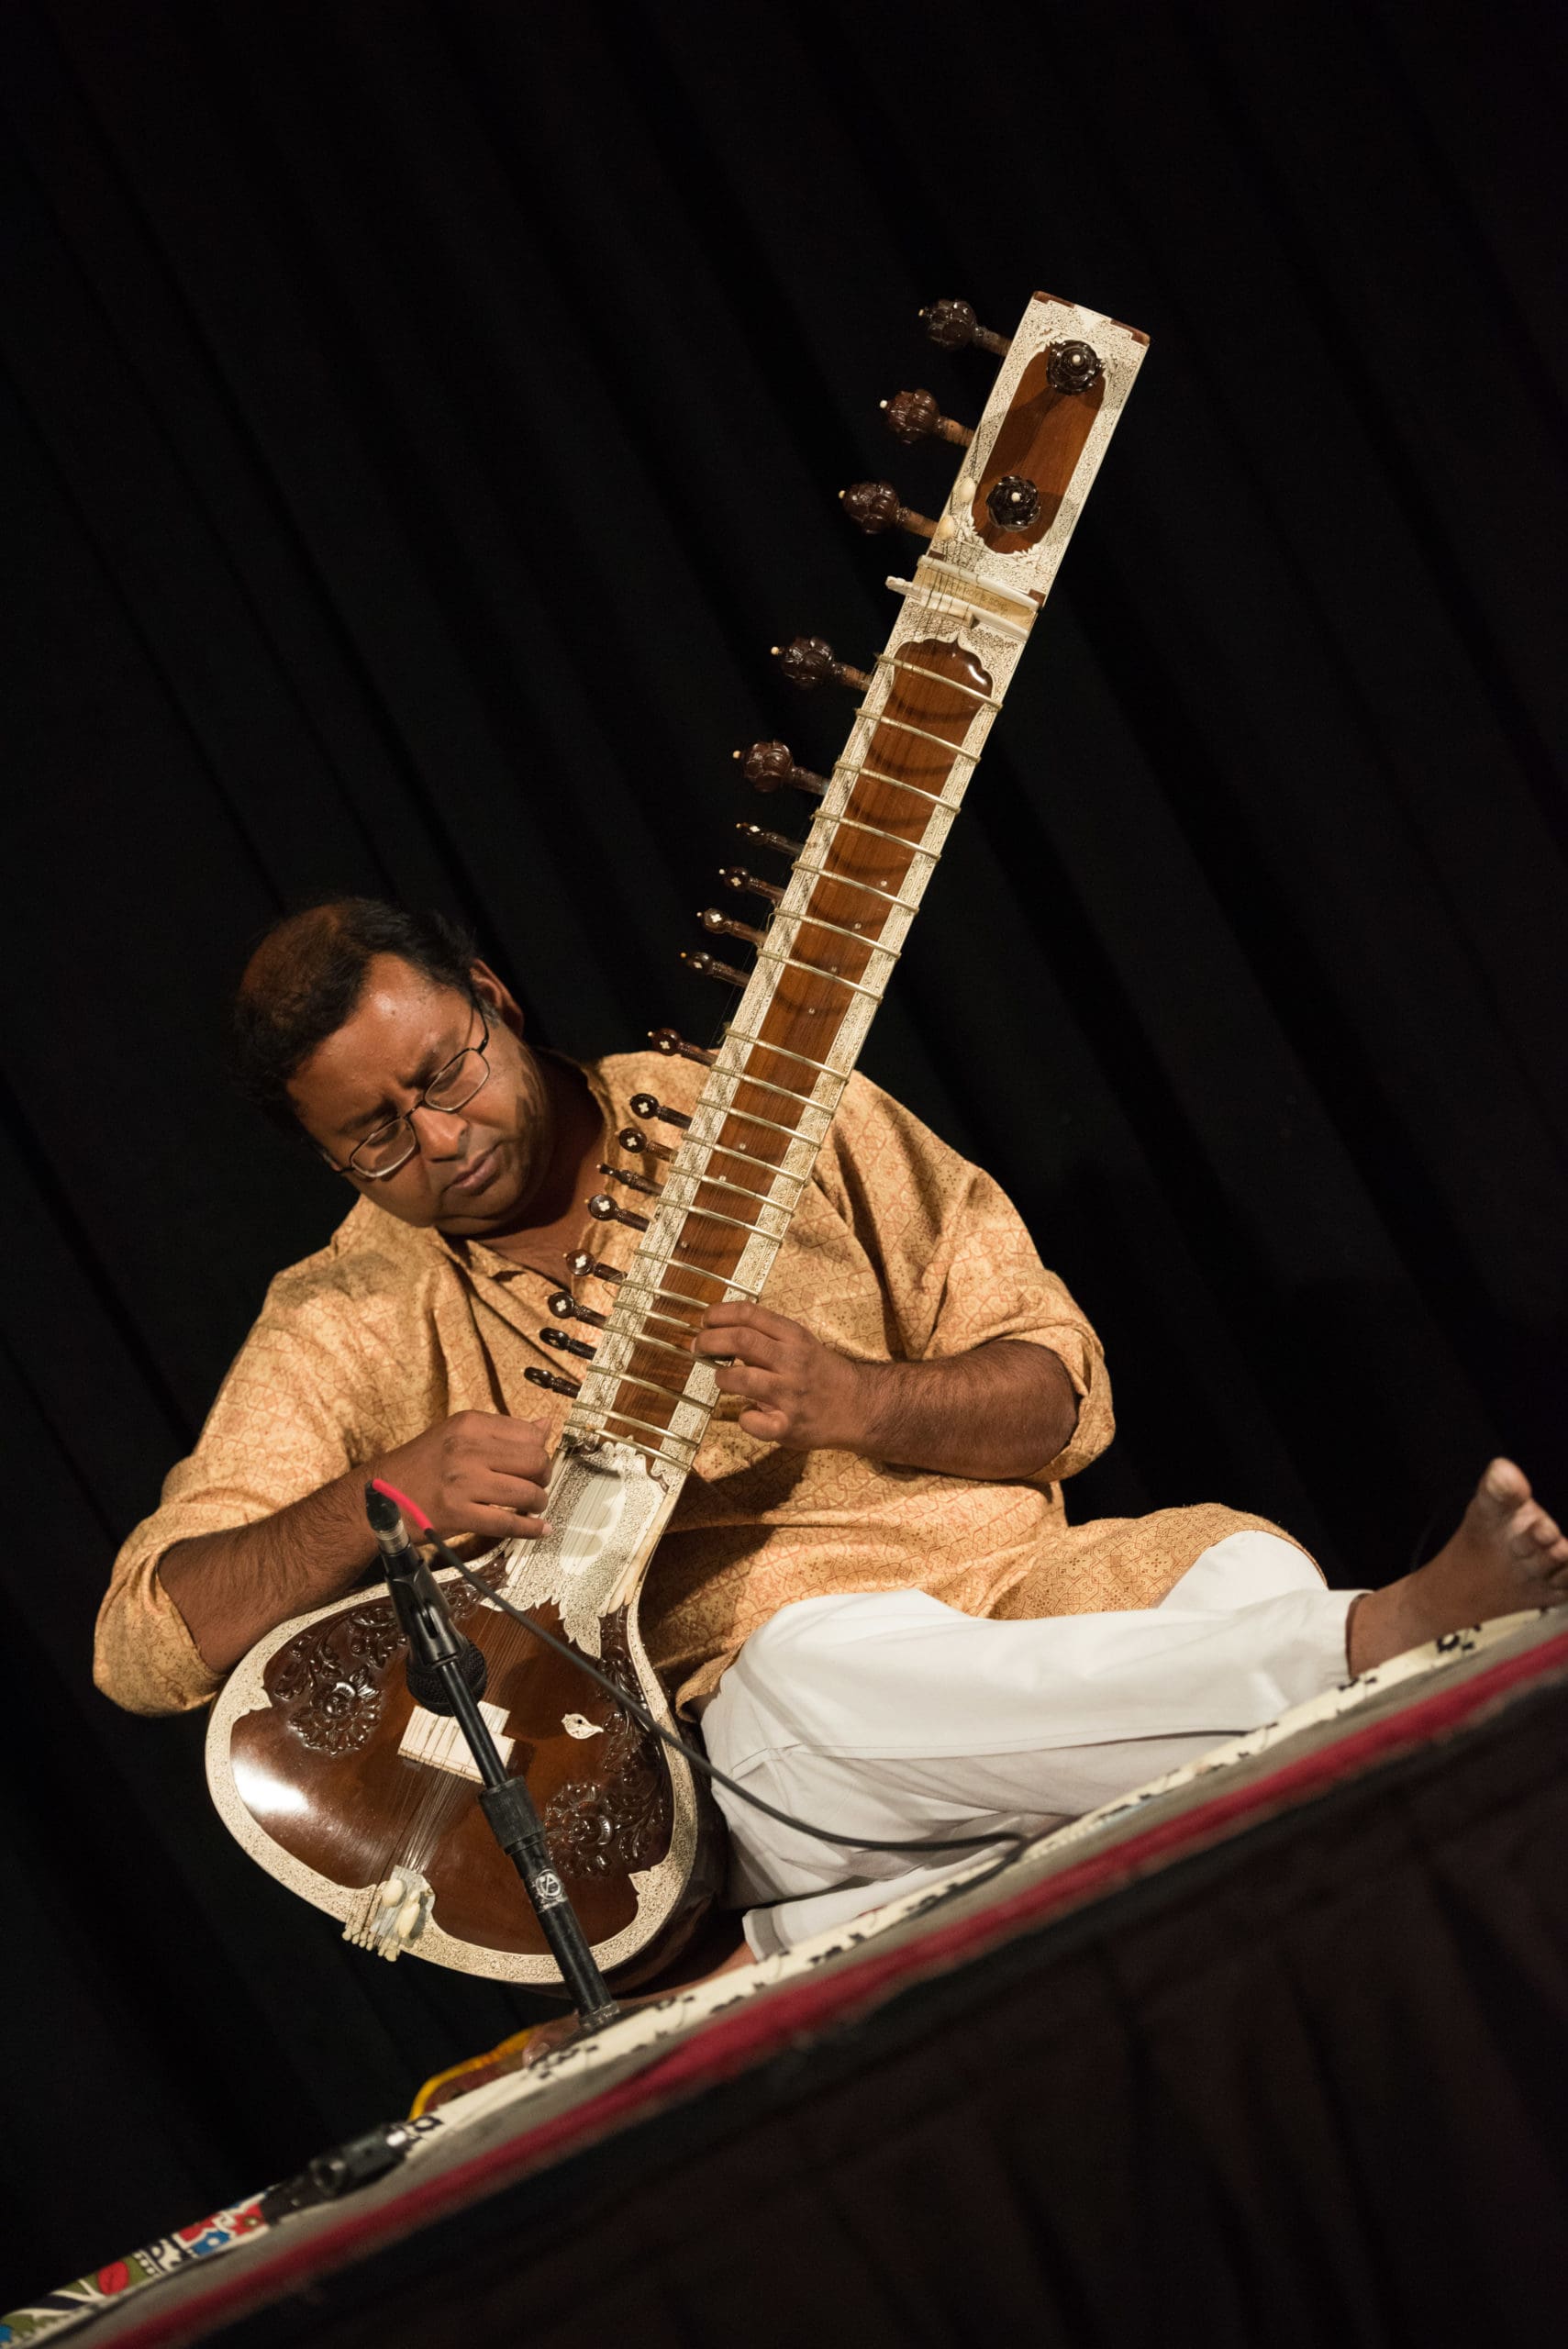 Srinivas Reddy, SRI 2020 performer